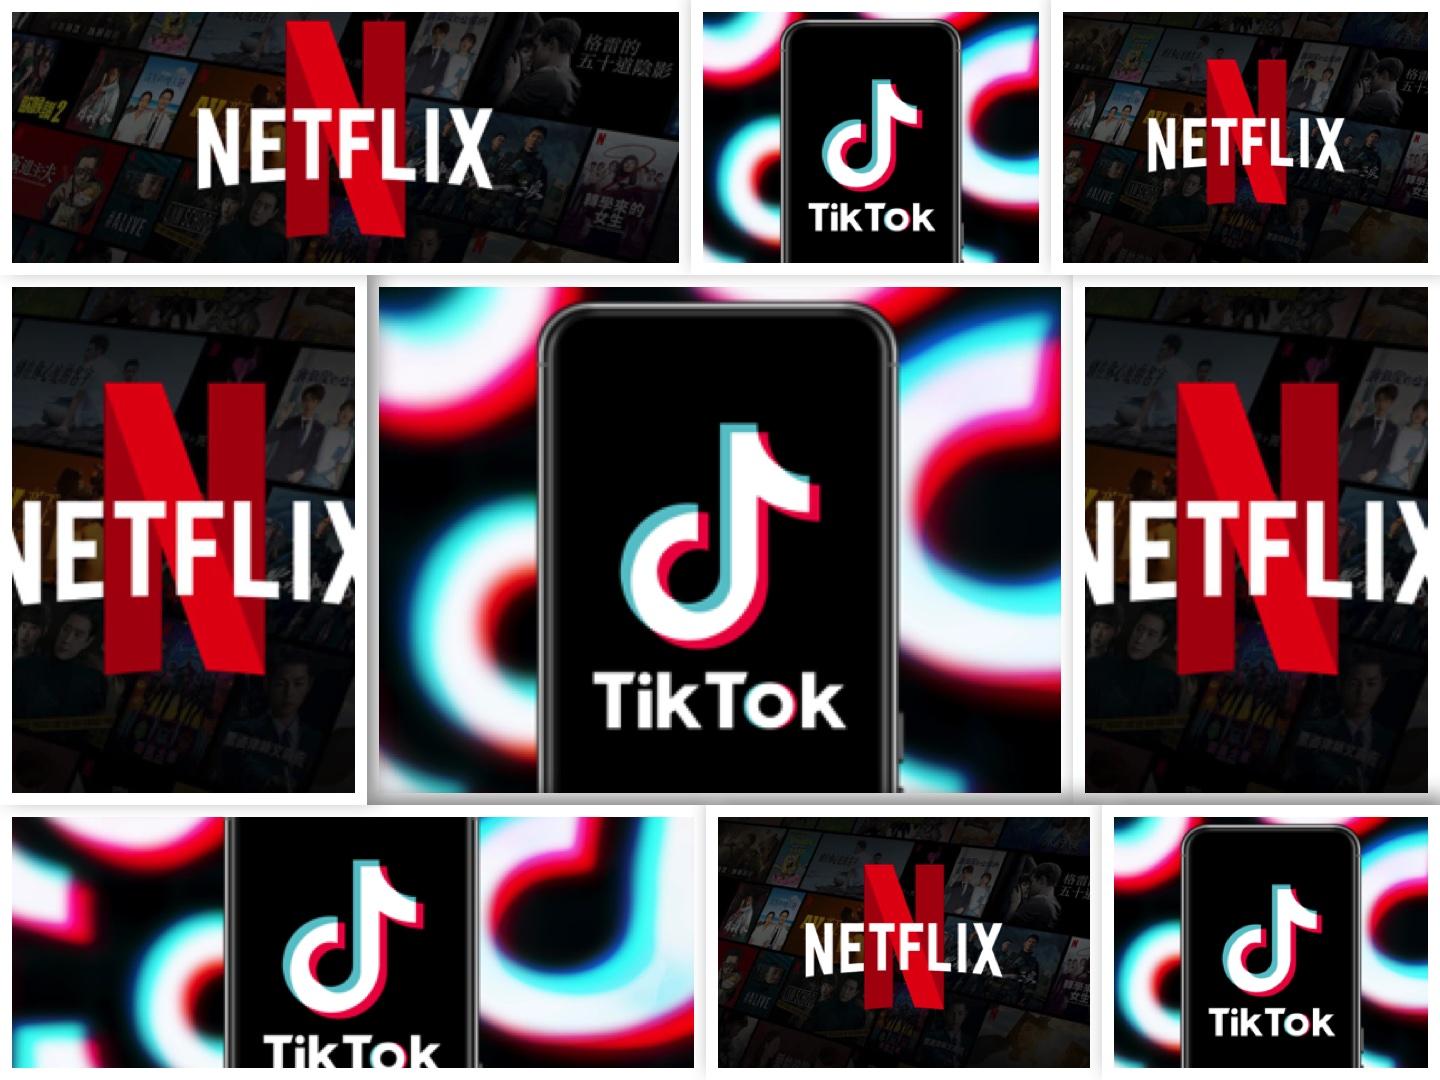 國外研究發現 TikTok 超越 Netflix 成為美國35歲以下人群最受歡迎的影音服務